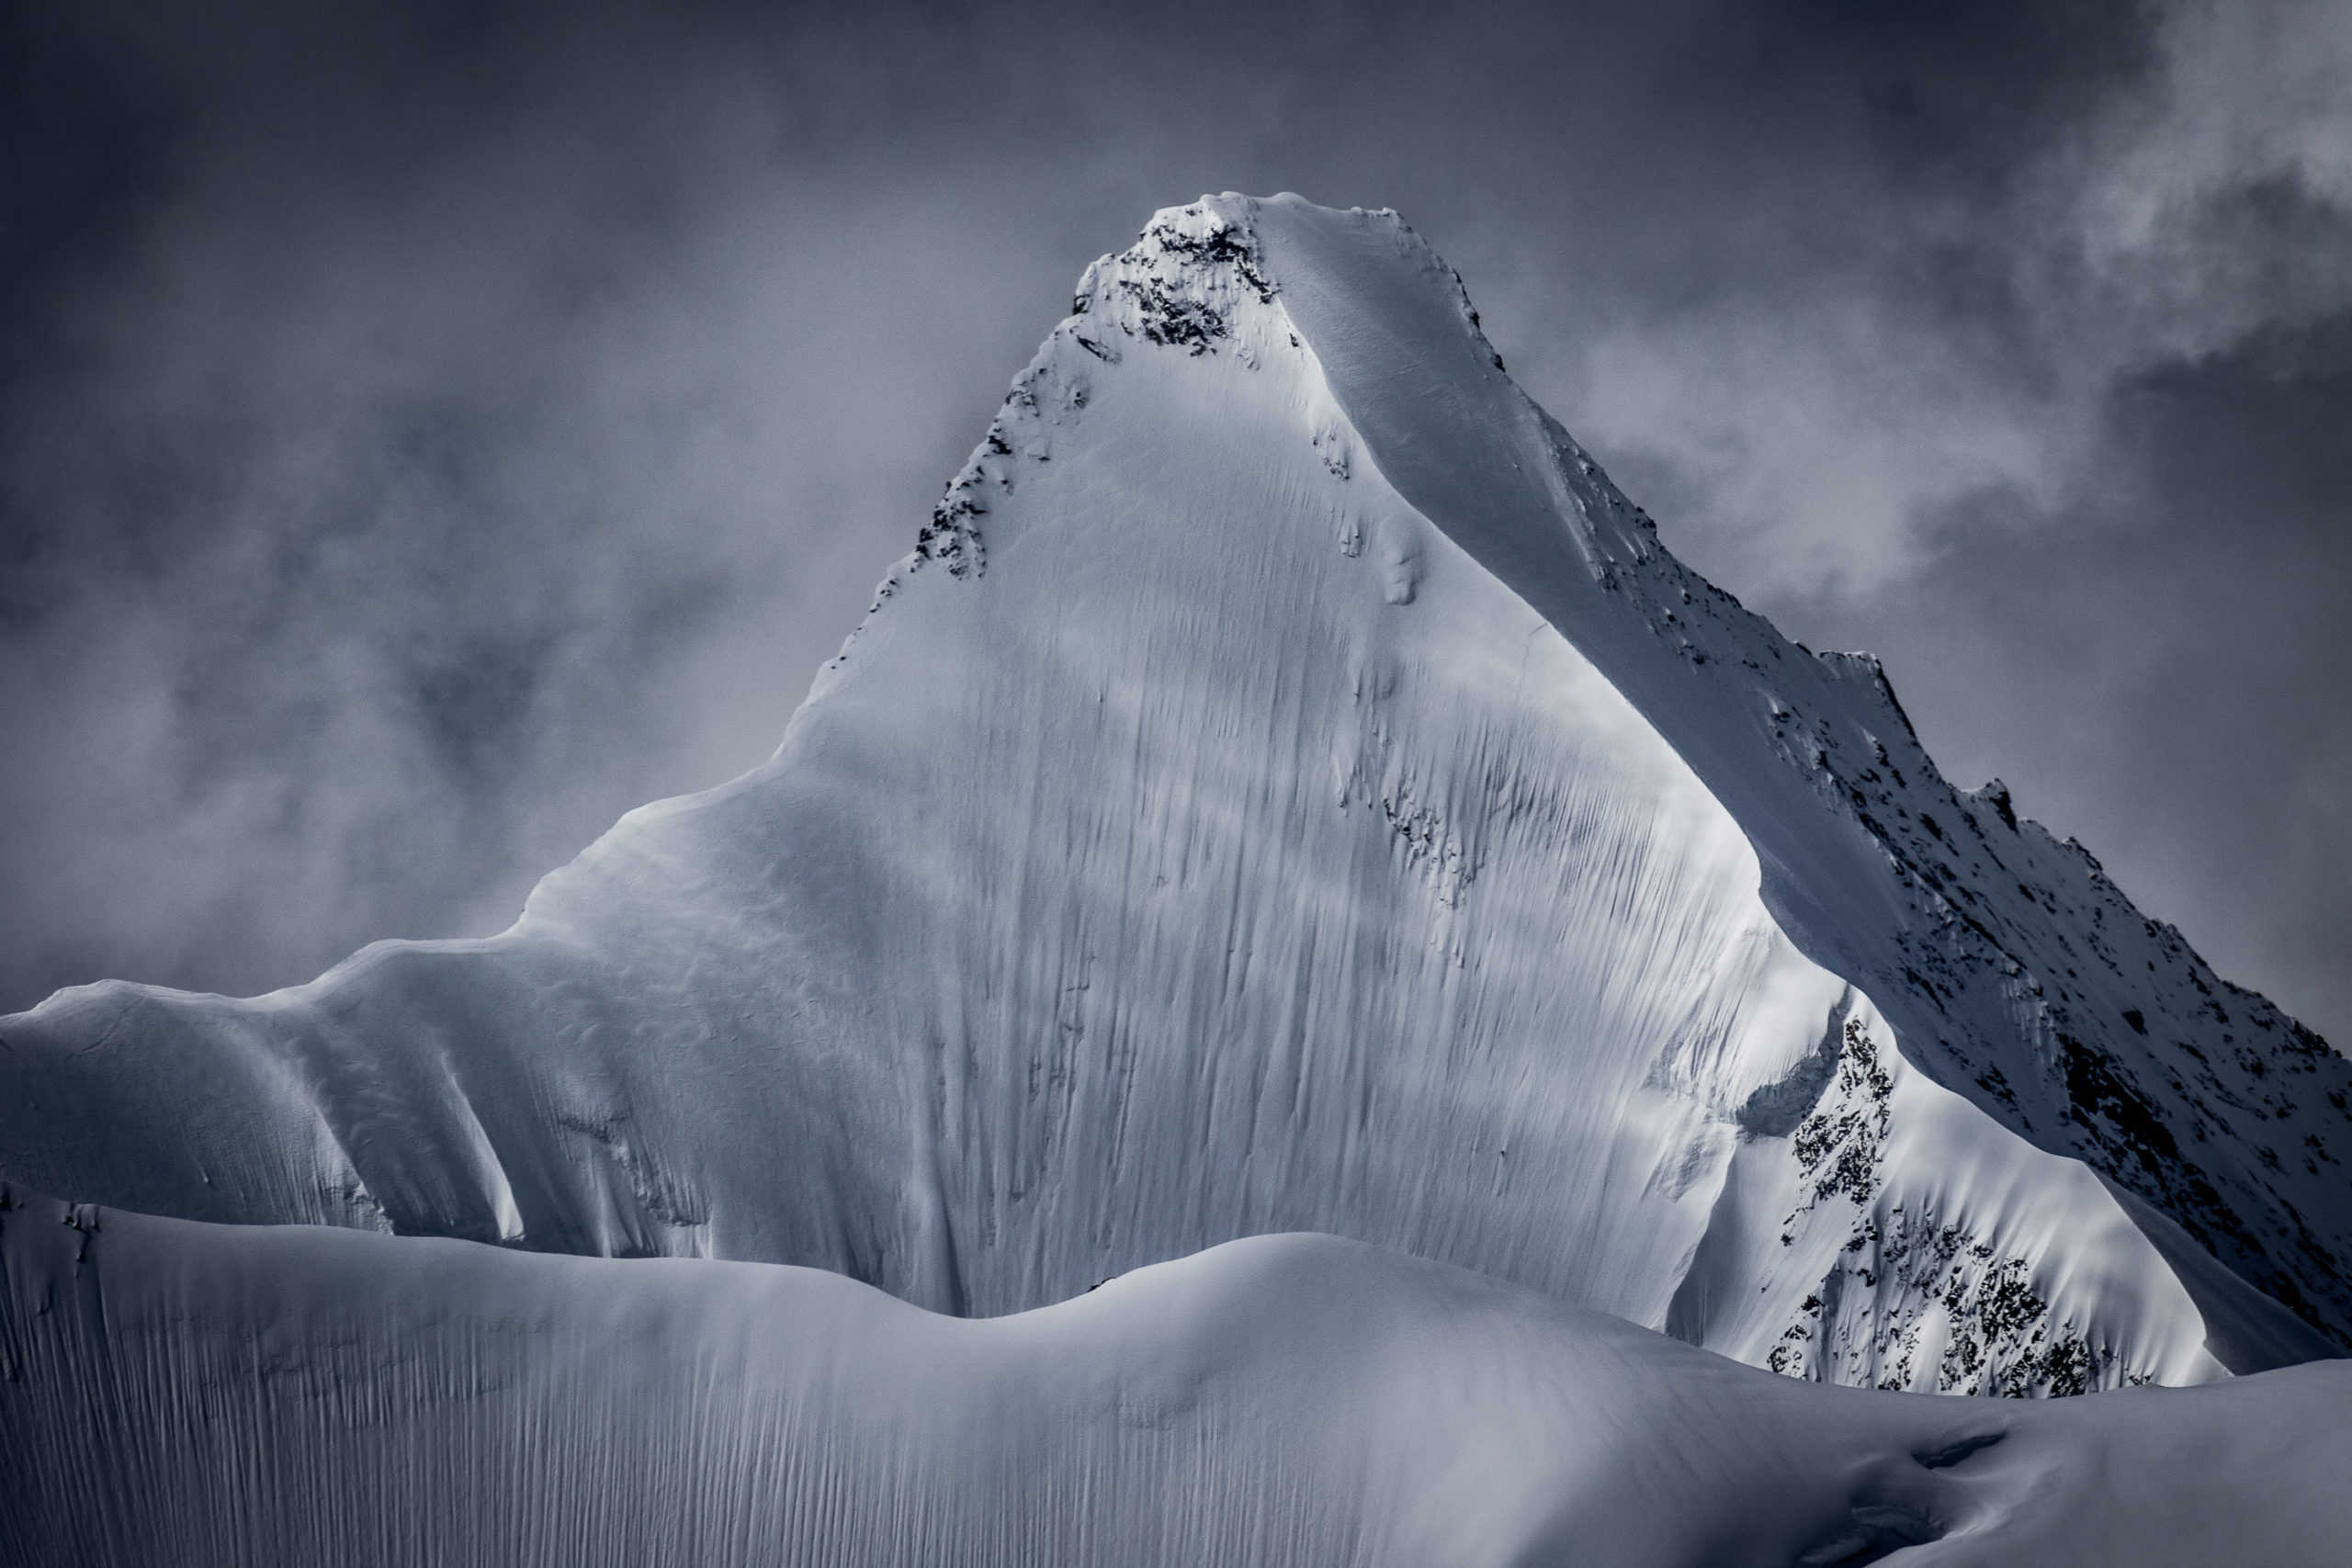 Fotografie der Nordwand desObergabelhorn. Eine der mythischsten Wände der Alpen und eine der schönsten! Frisch verschneit und mit einem besonderen Lichtspiel erscheint dieObergabelhorn in ihrer reinsten Form.